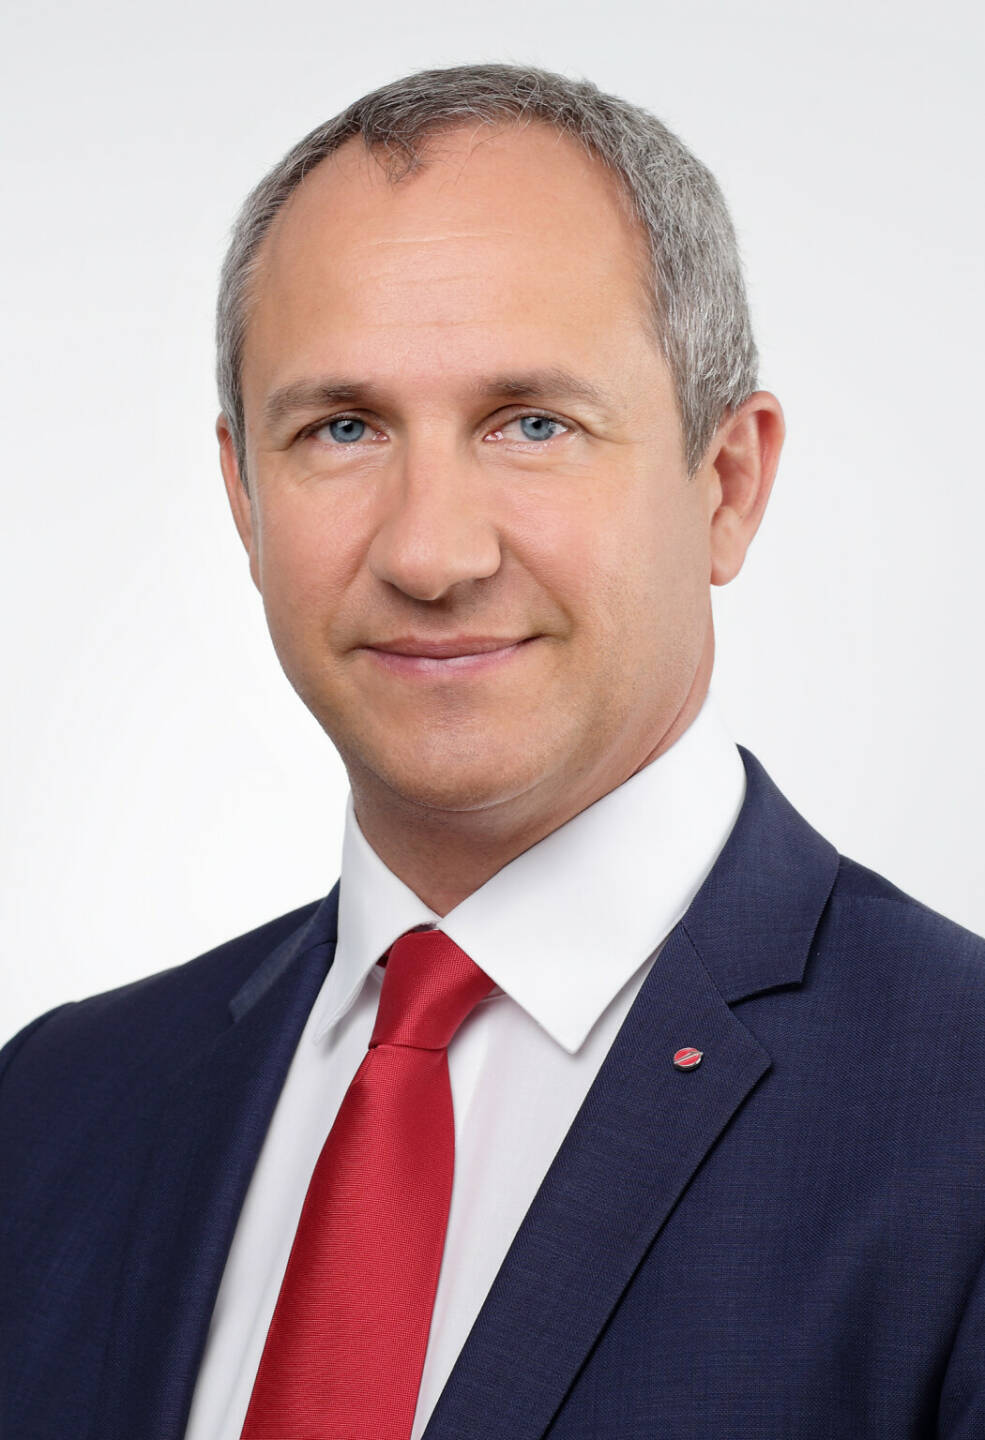 Michael Kaltenbeck übernimmt die Leitung für das Firmenkundengeschäft der UniCredit Bank Austria in Niederösterreich und im Burgenland. Credit: Unicredit